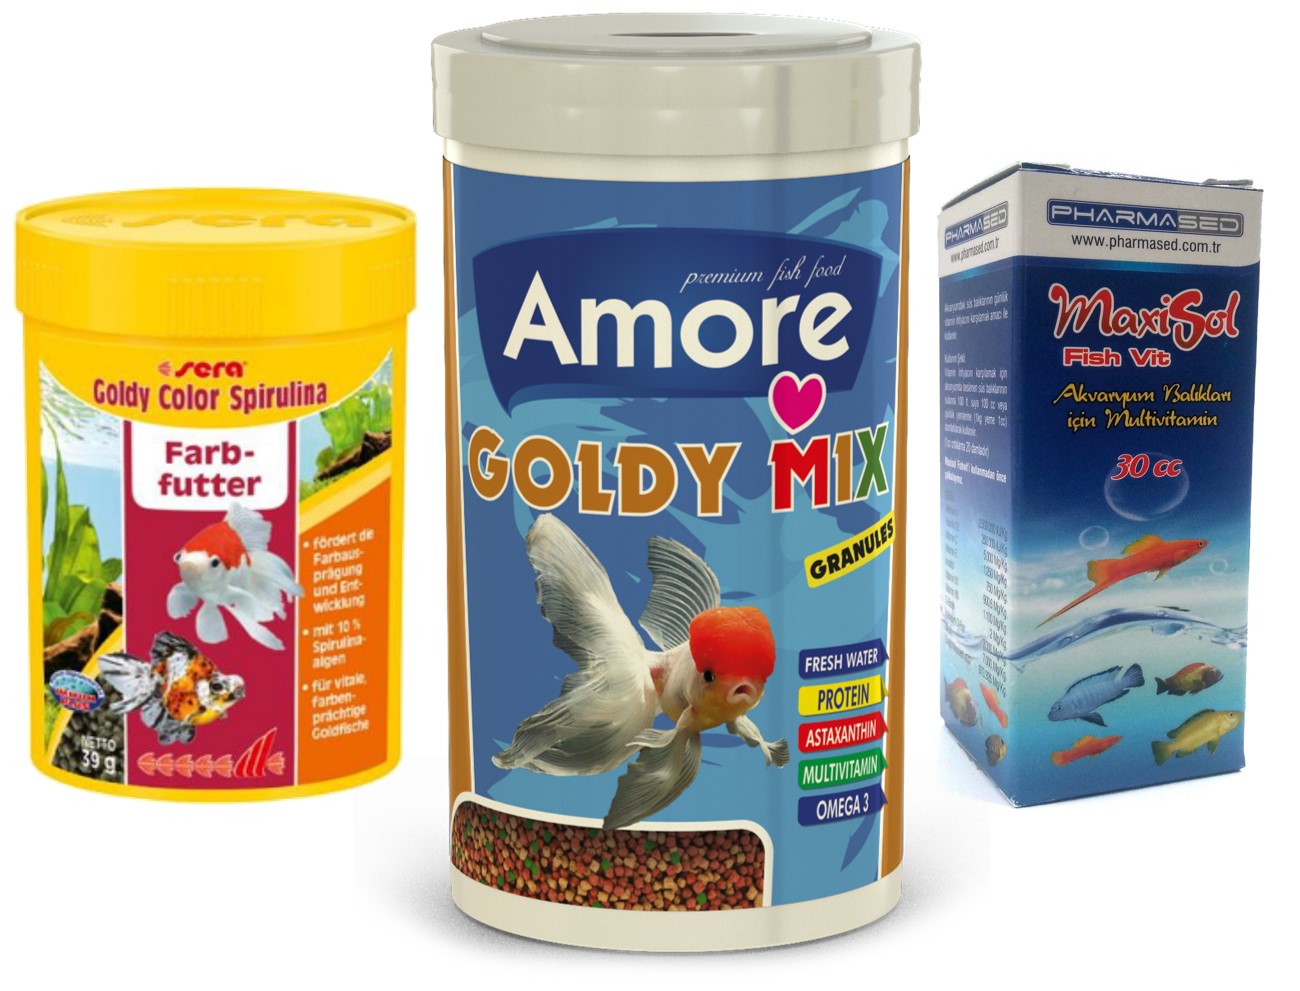 Amore Goldy Mix Granules 250ml Ve Sera Goldy Color Spirulina 100ml Kutu Japon Balığı Yemi Ve Vitamin